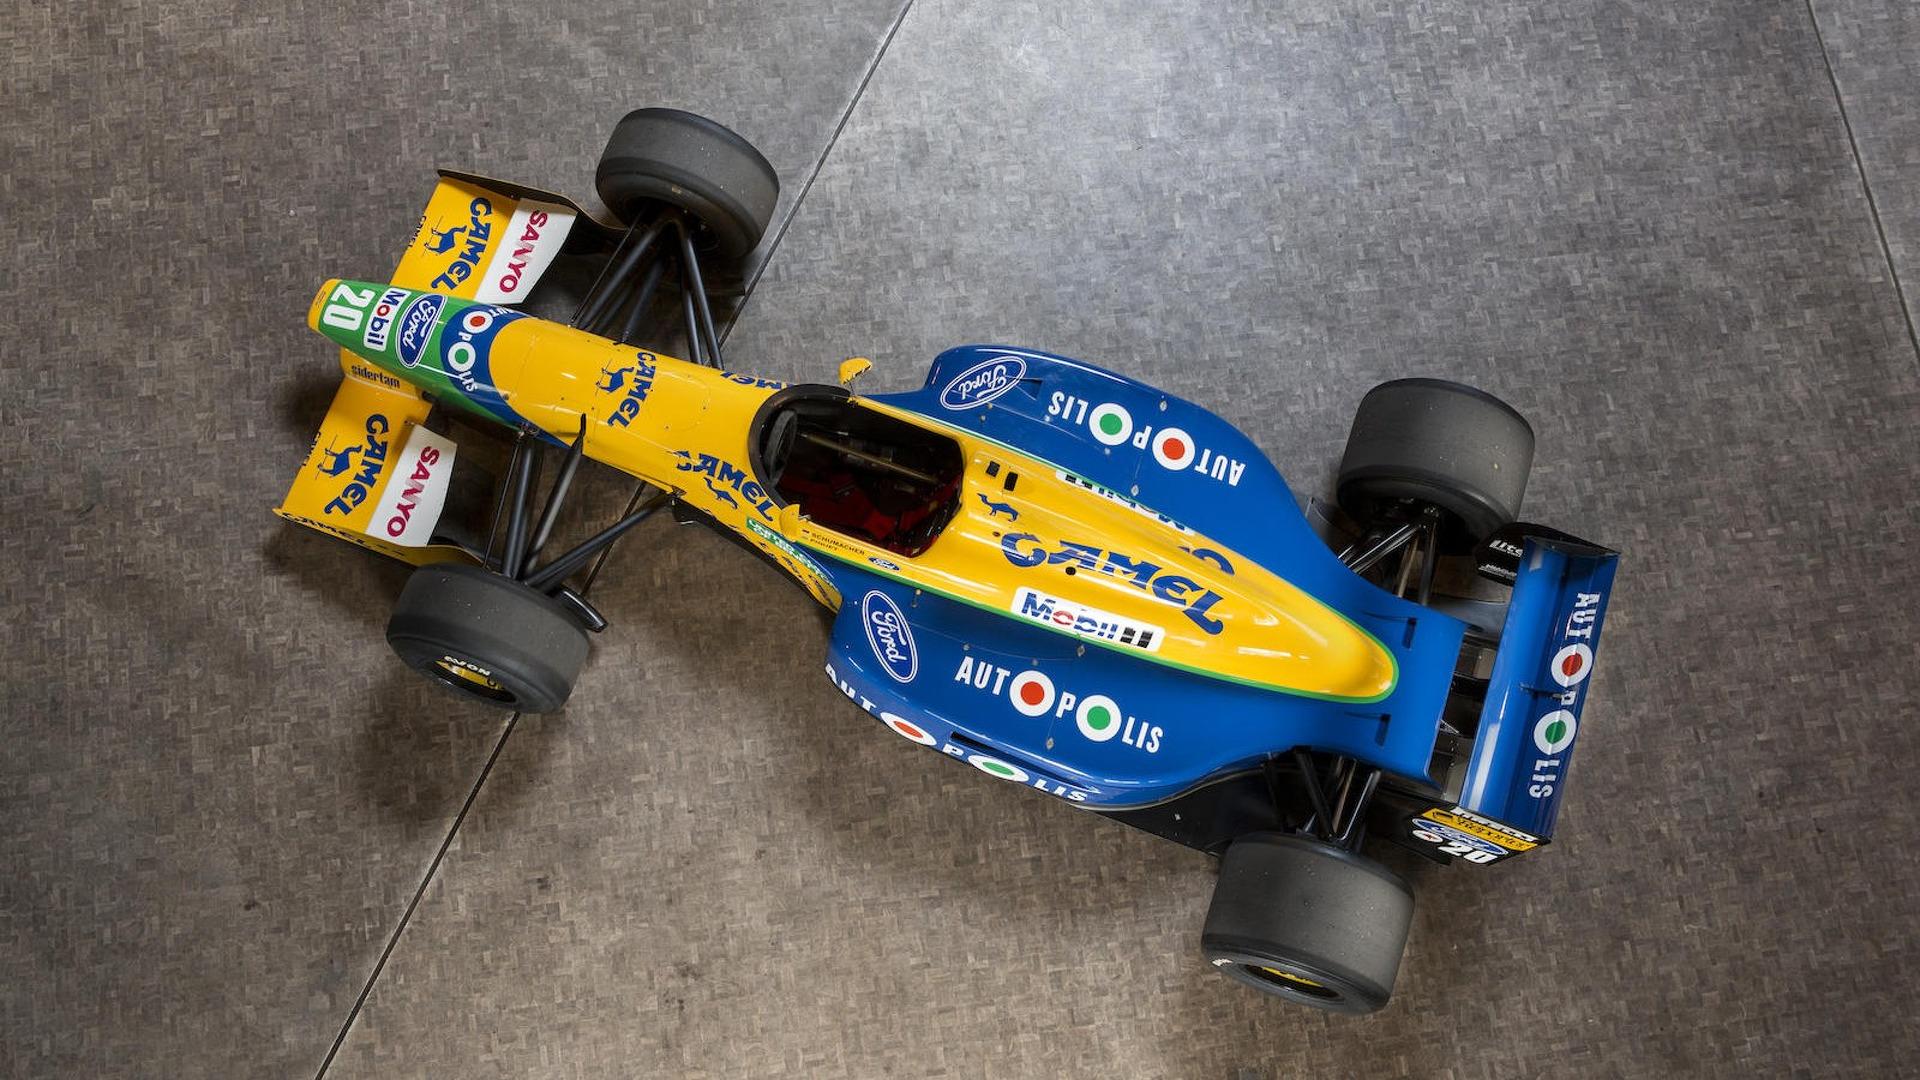 Benetton F1 1991